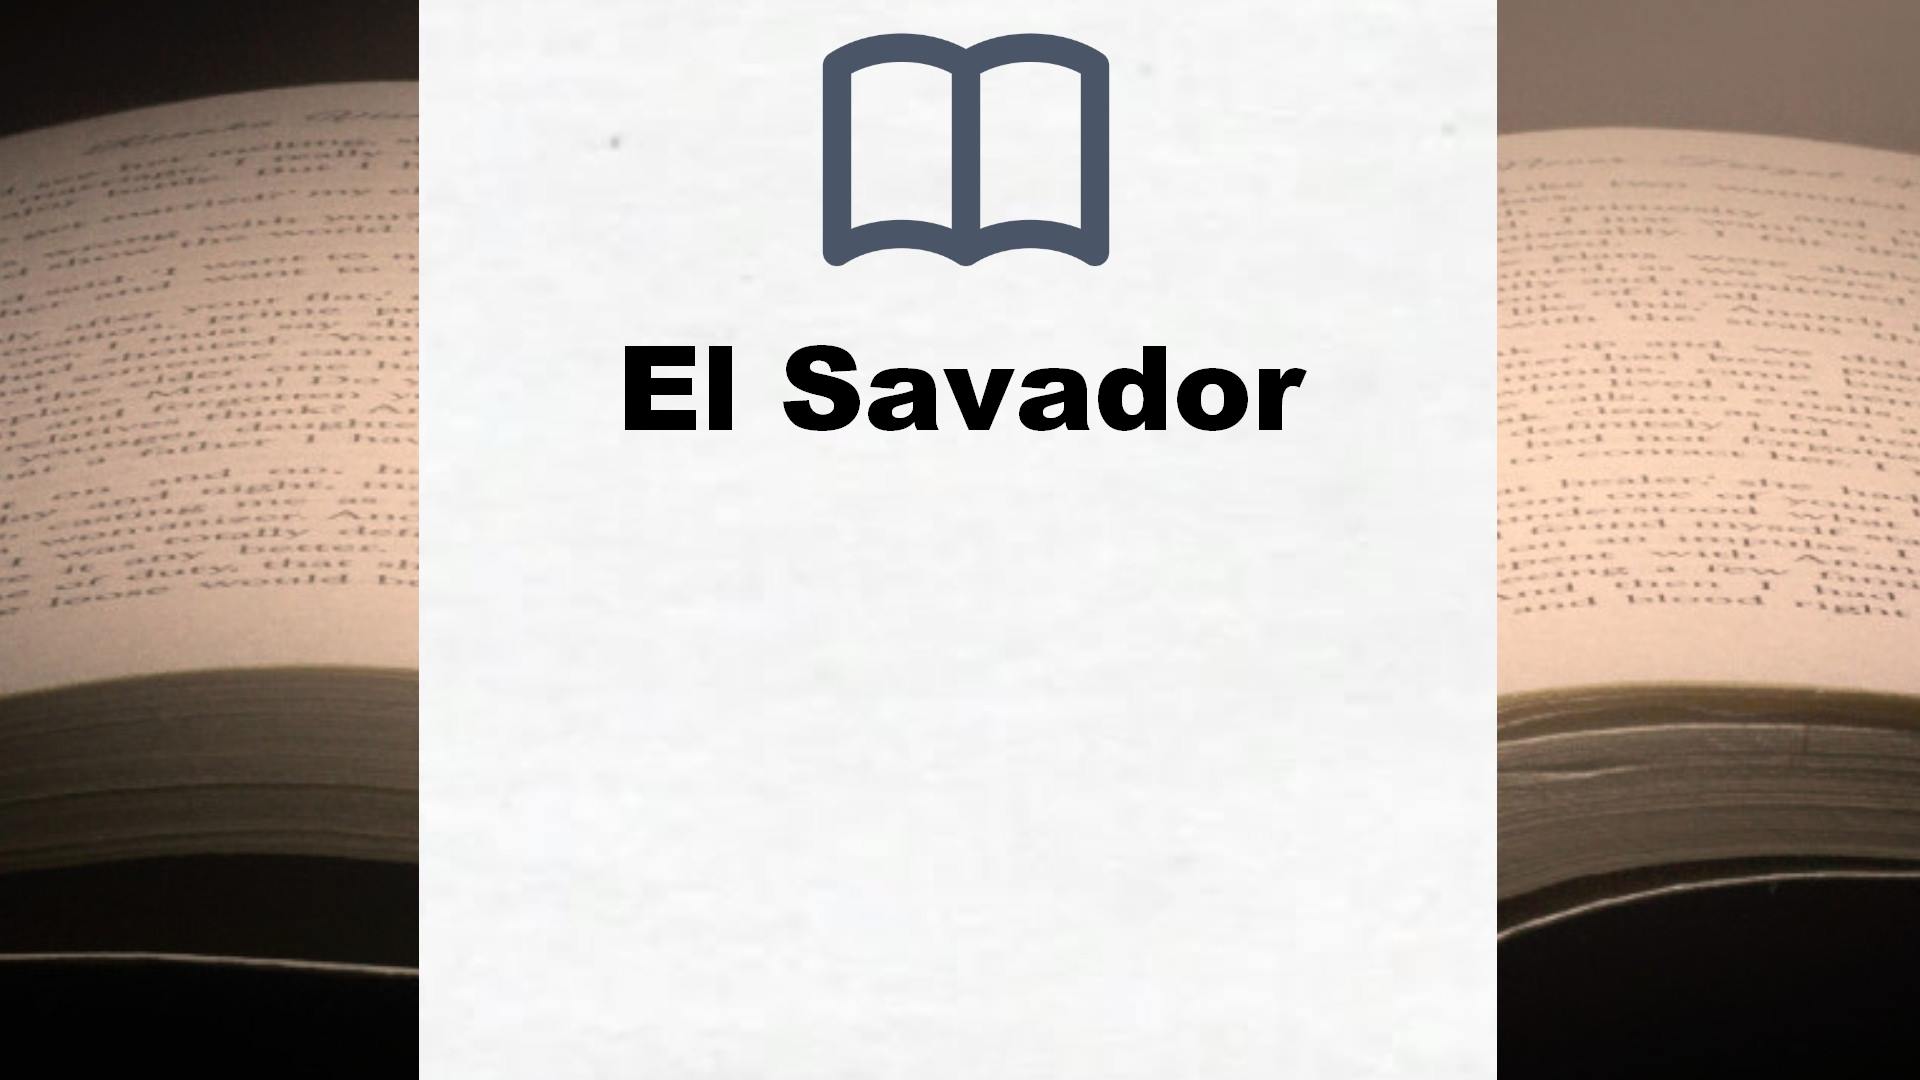 Bücher über El Savador